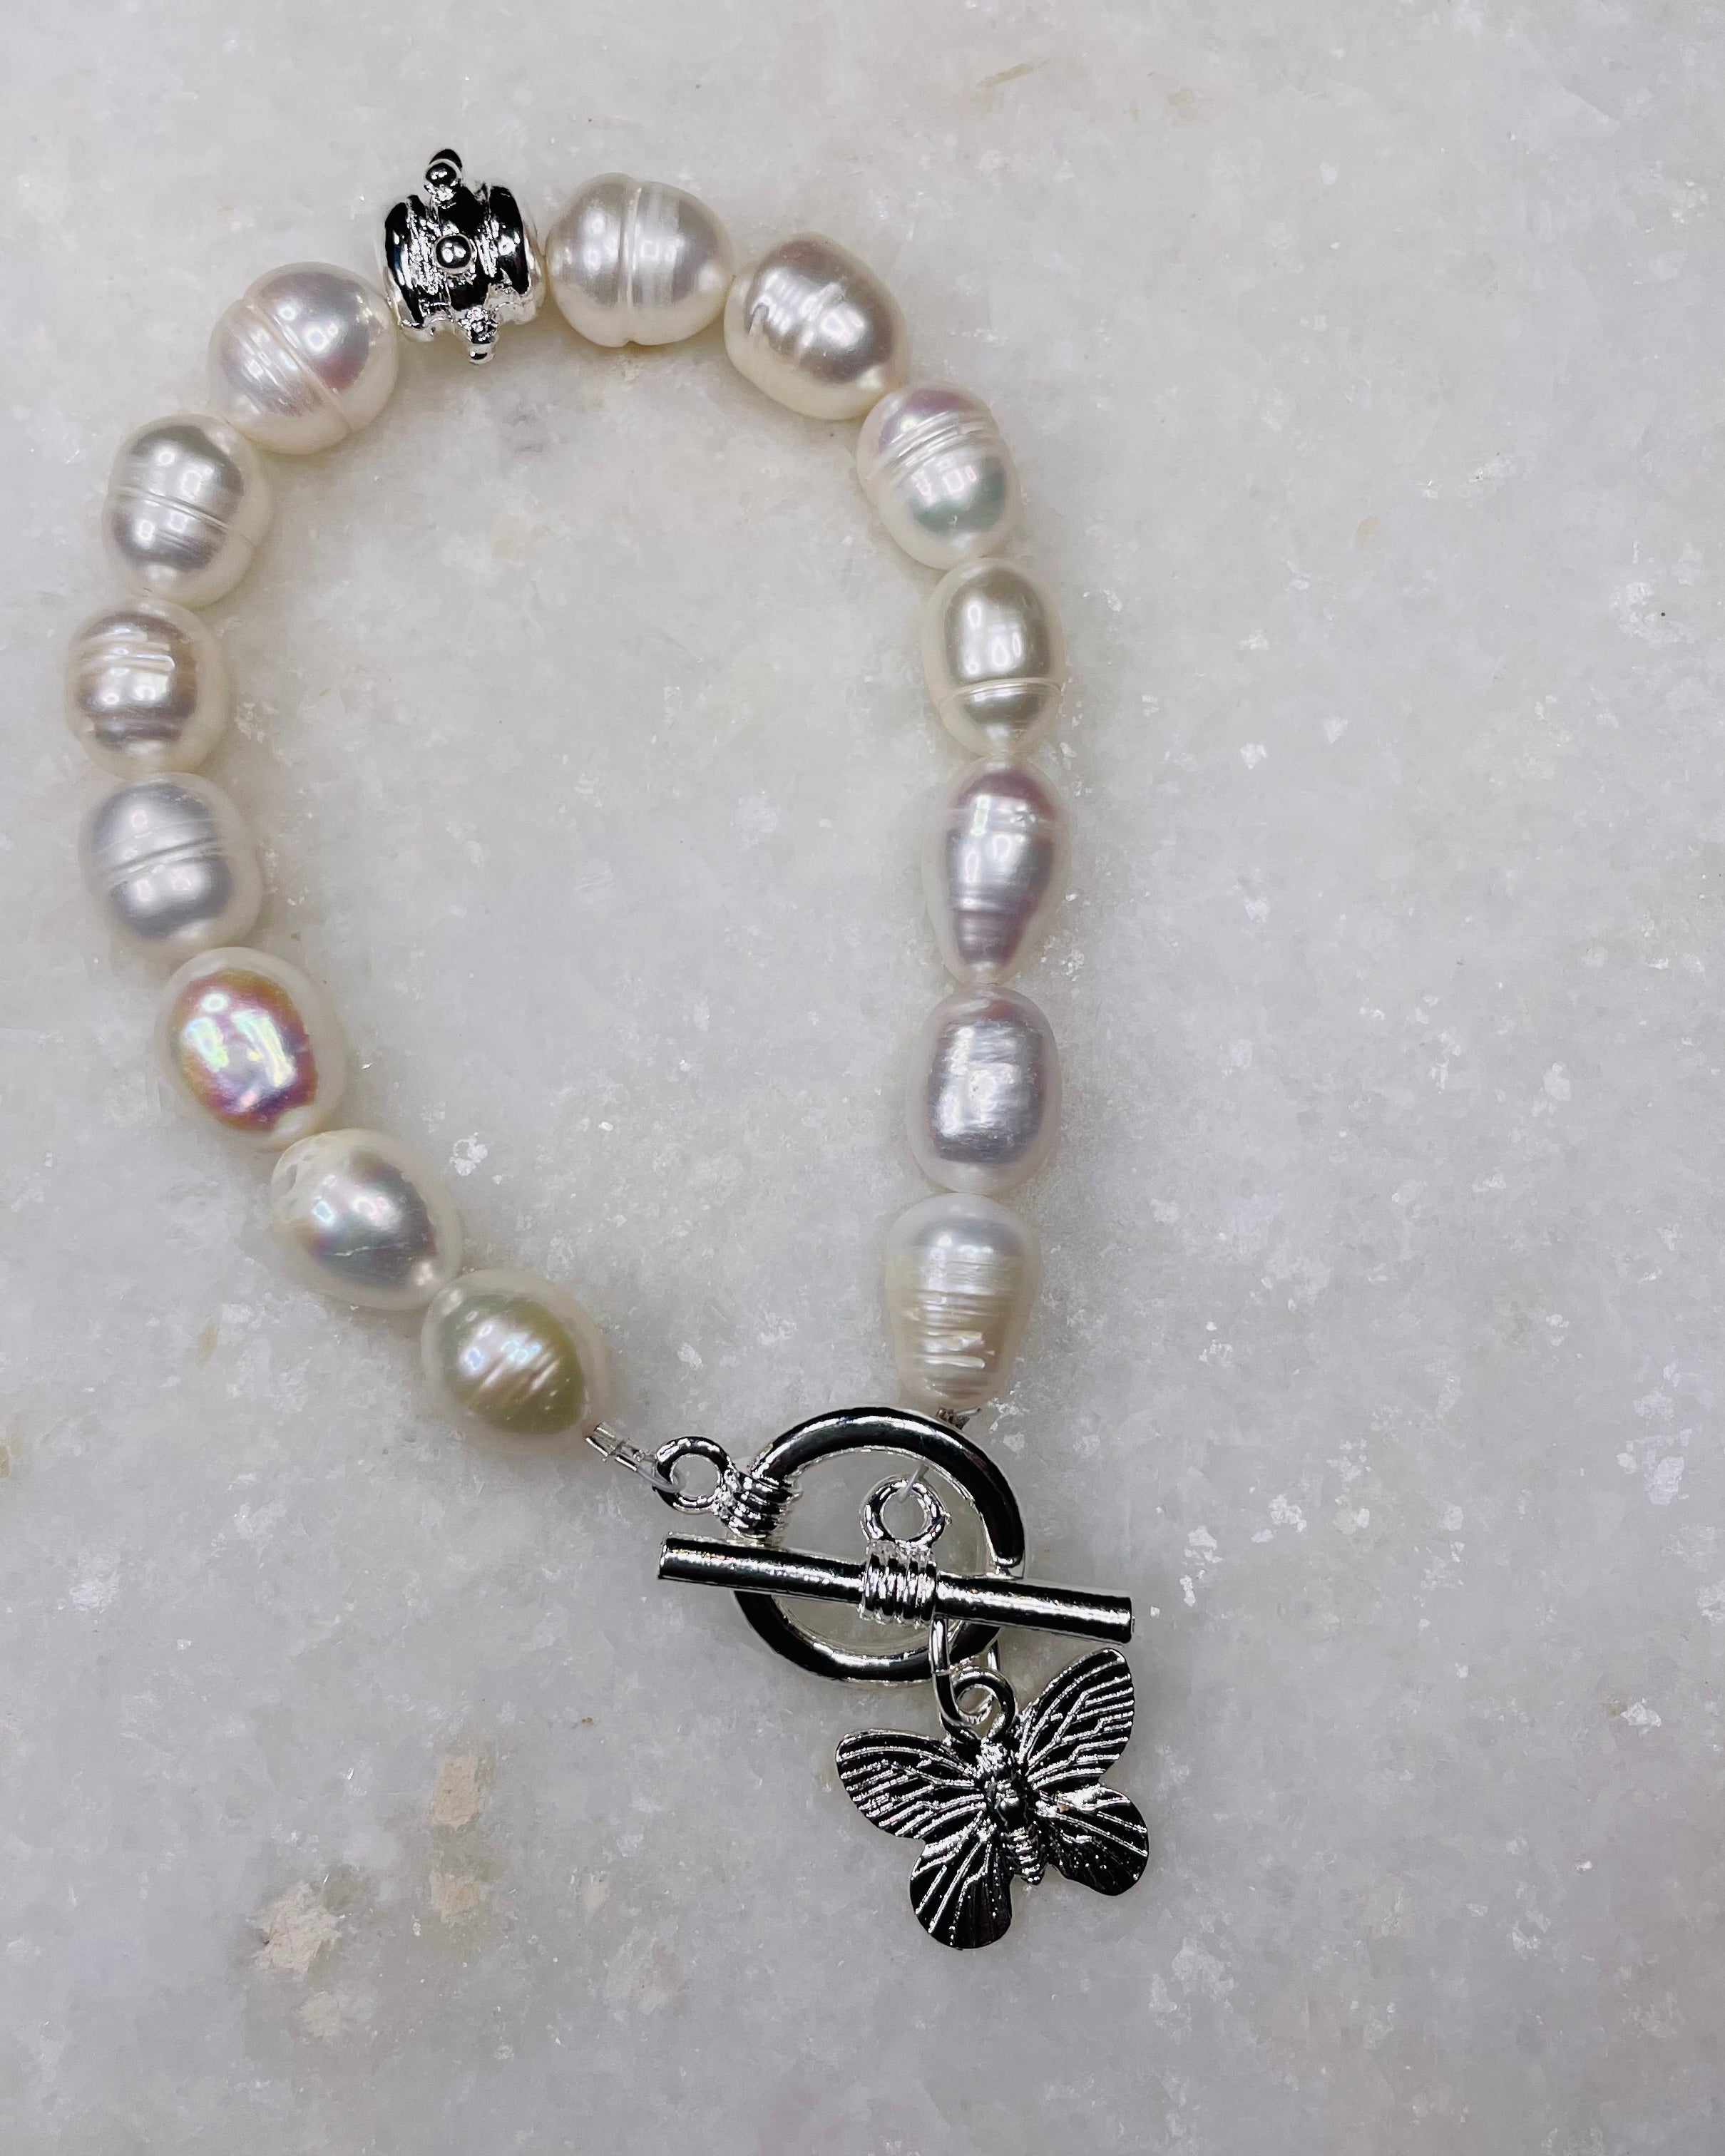 Susan Shaw Pearl Bracelet w/Butterfly Charm in Silver.